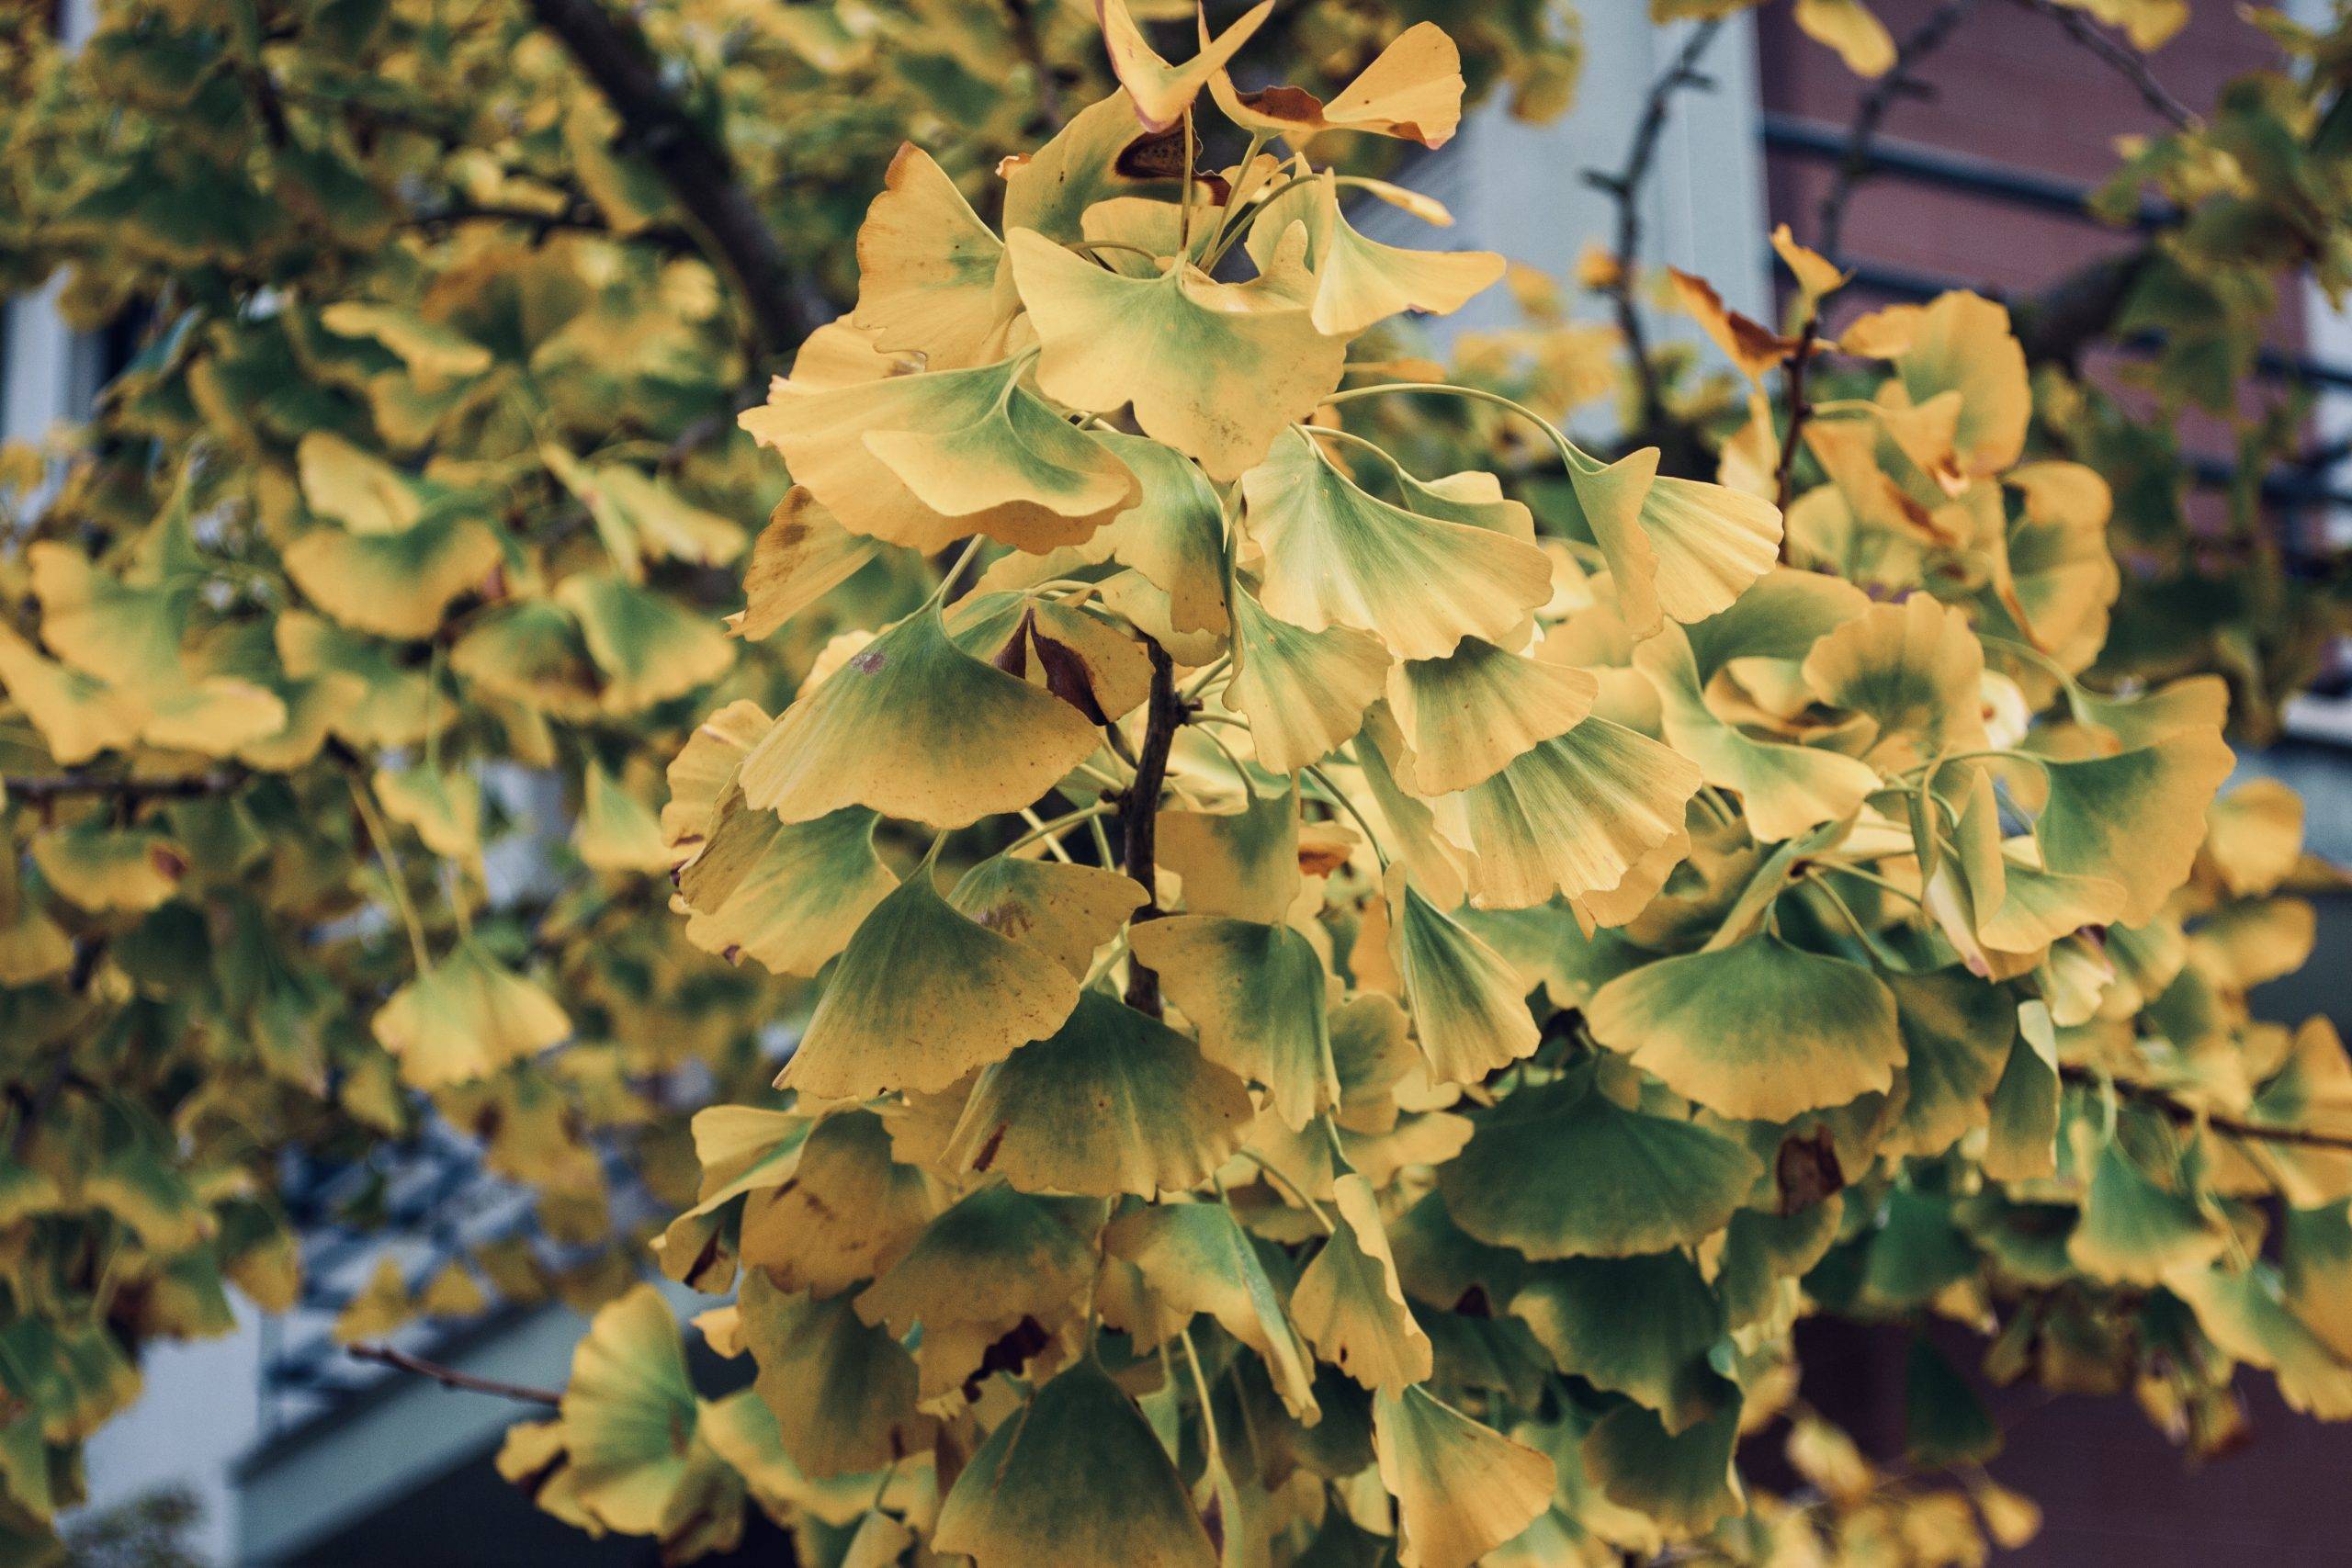 Ginkgo biloba träd med blad som håller på att bli gula på hösten. Bilden är tagen på en kvist med blad som skiftar från grönt till klart gult.